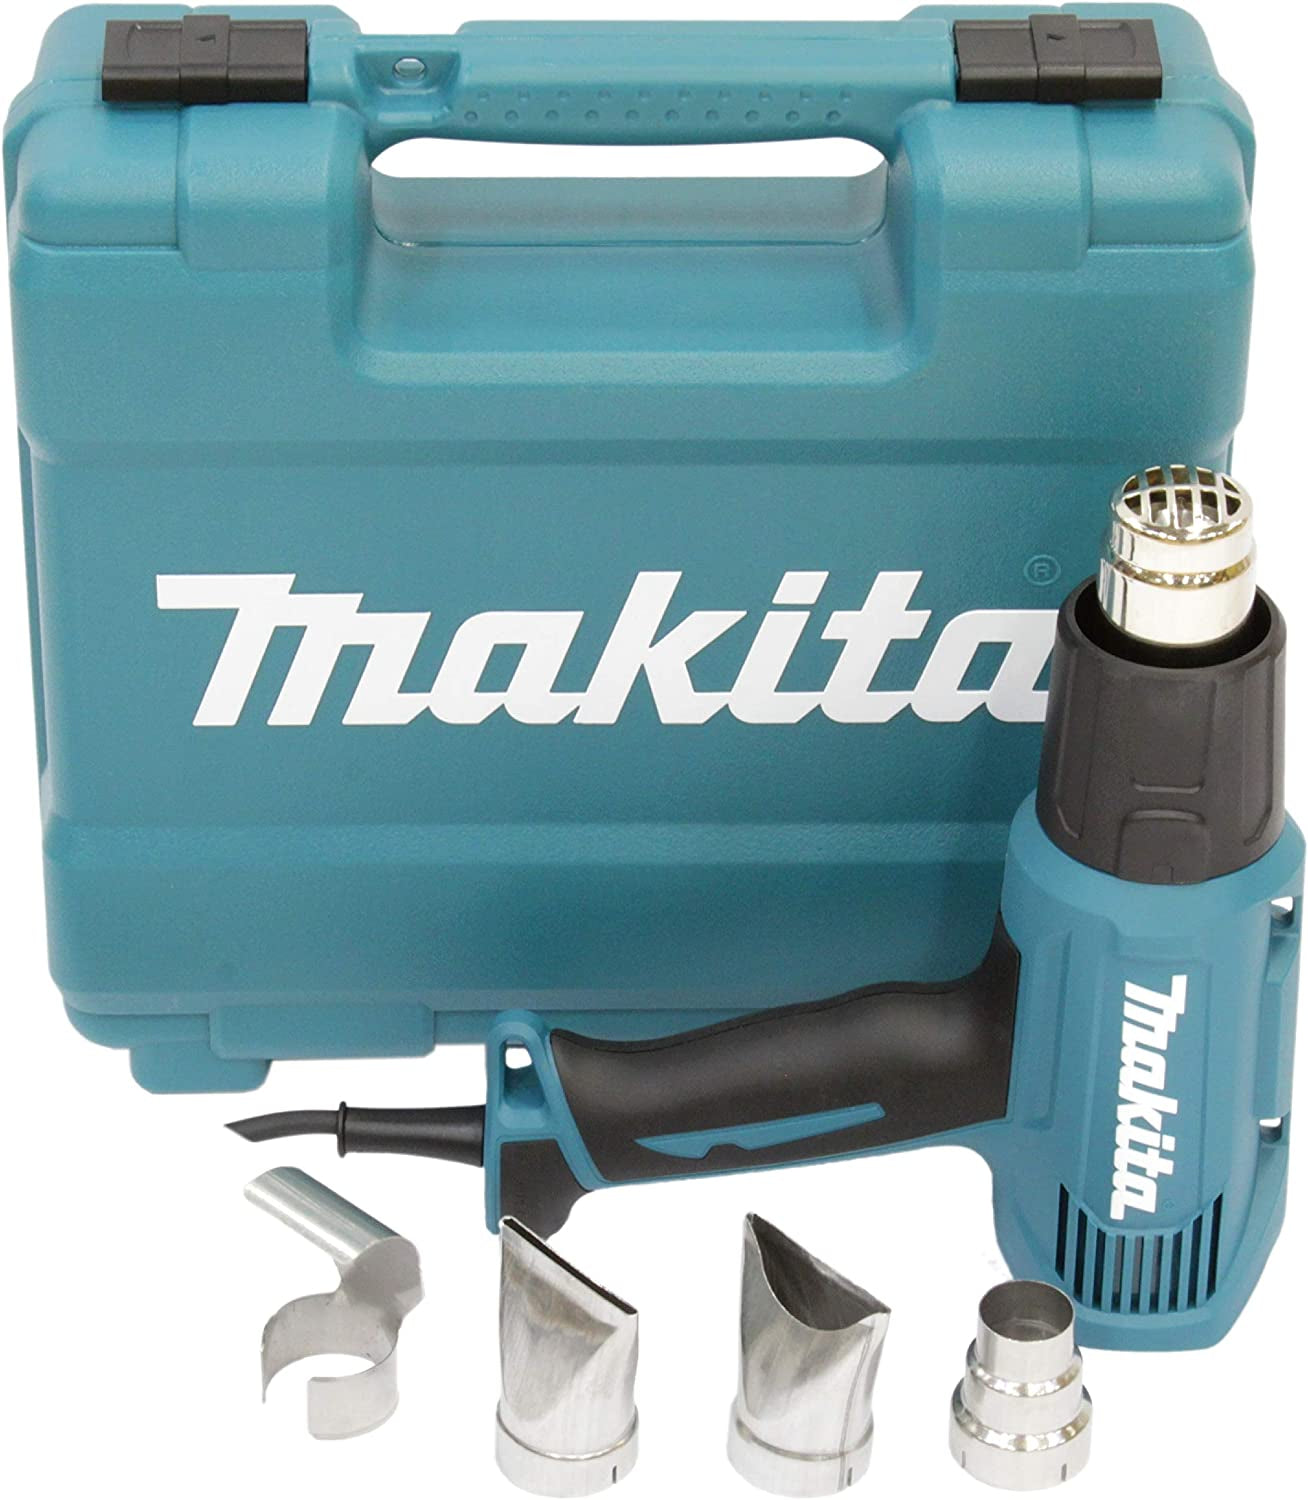 Makita, Makita 1600W 500 Degree Heat Gun